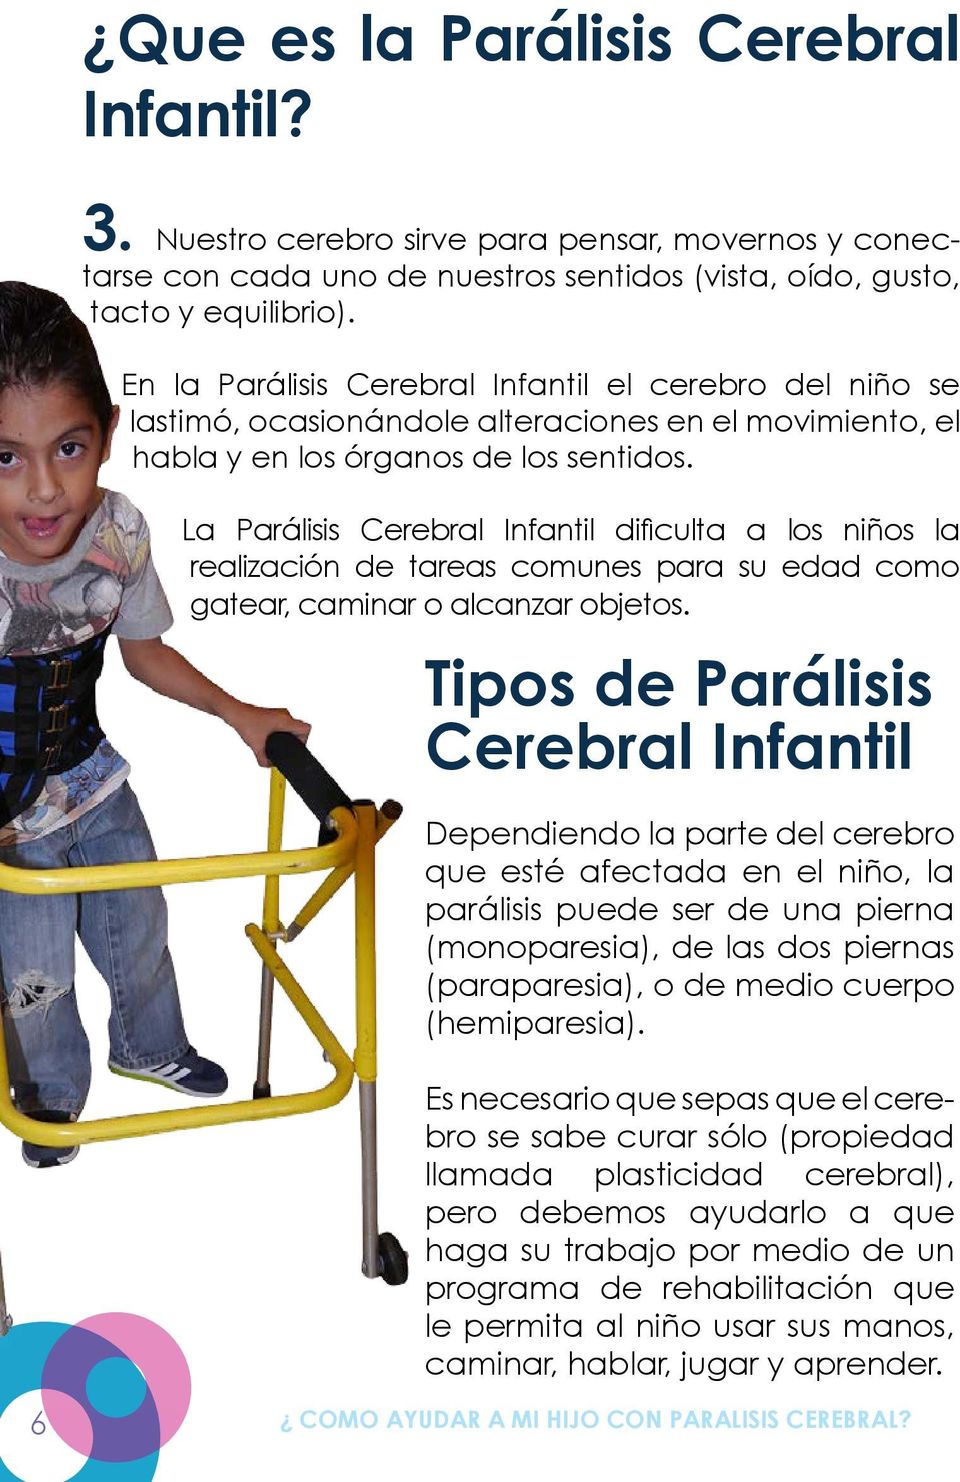 La Parálisis Cerebral Infantil dificulta a los niños la realización de tareas comunes para su edad como gatear, caminar o alcanzar objetos.